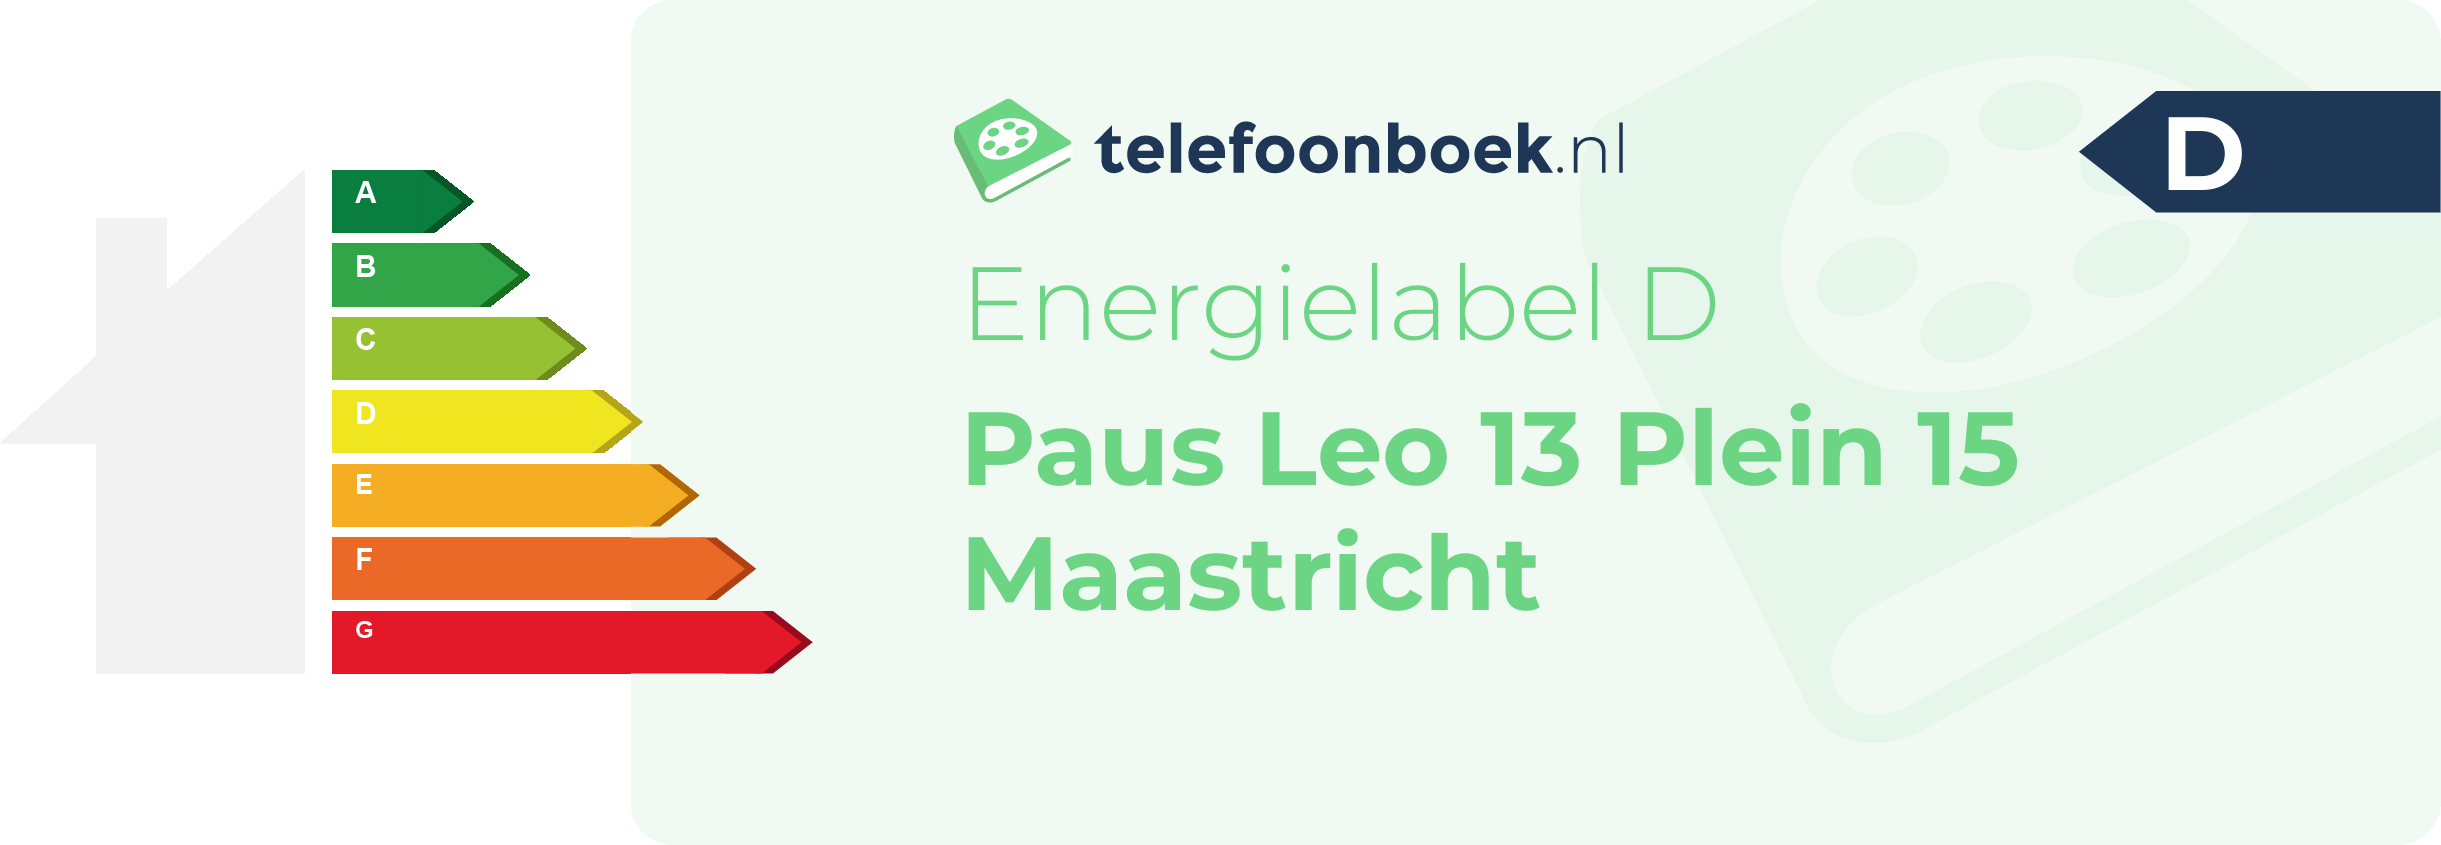 Energielabel Paus Leo 13 Plein 15 Maastricht